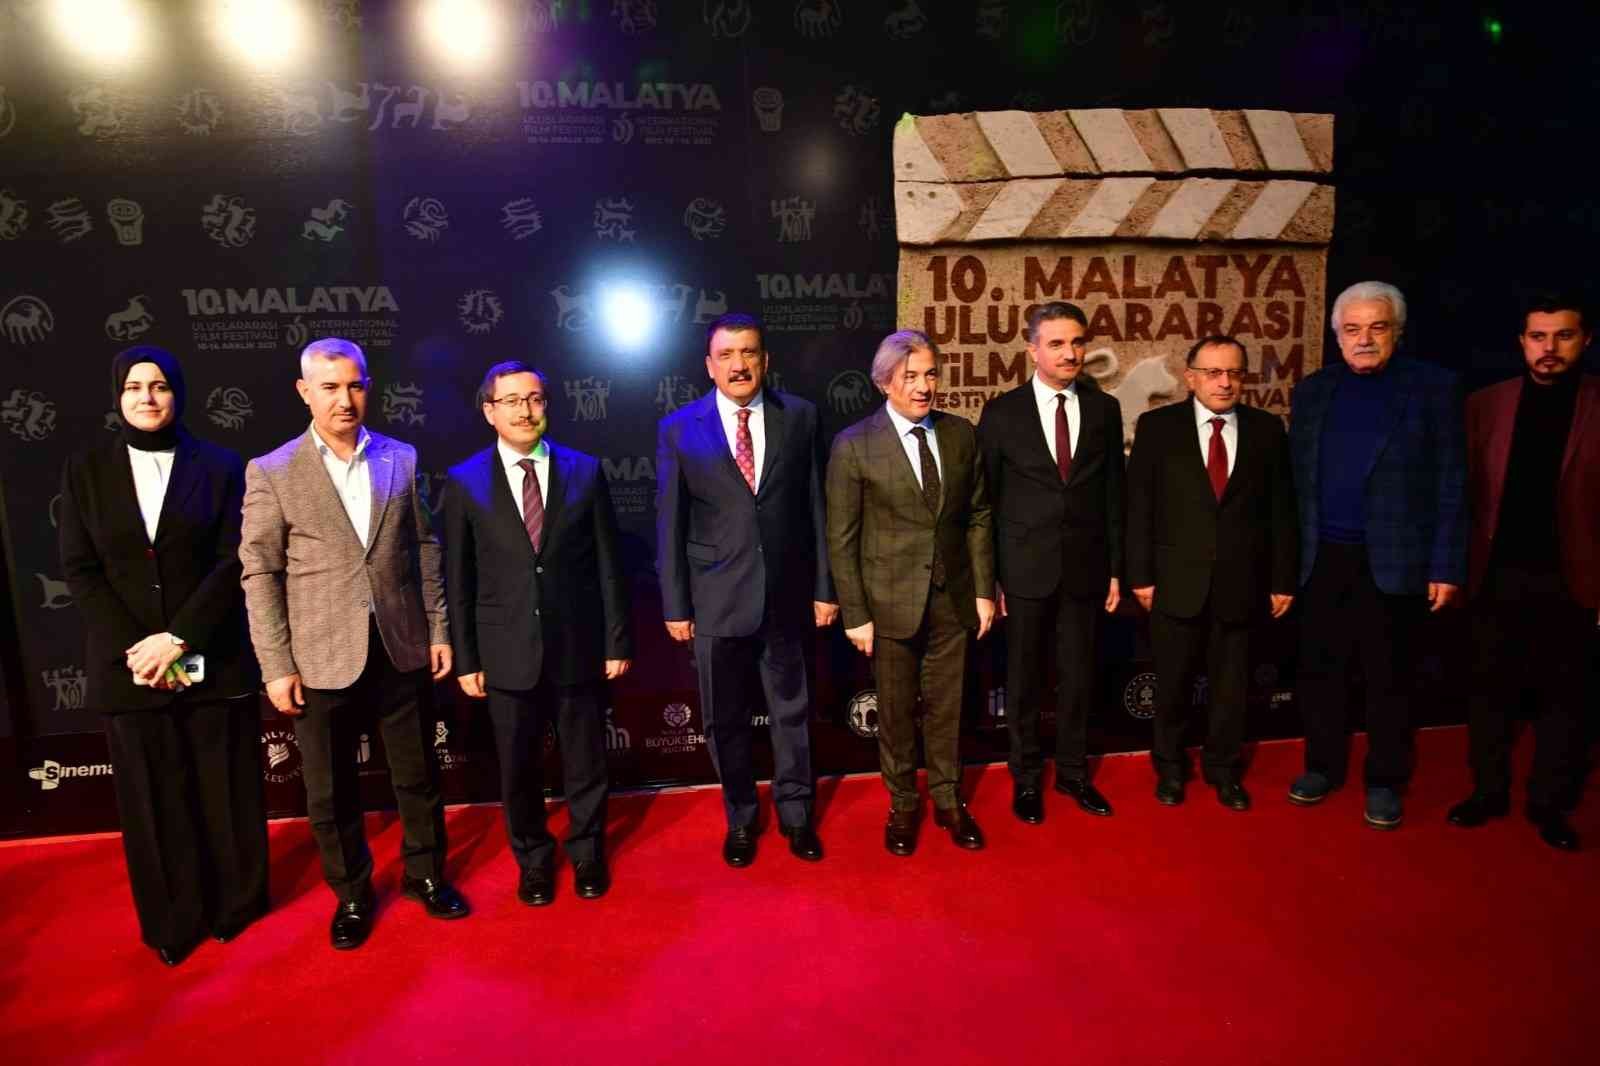 10 Malatya Uluslararası Film Festivali’nde ödüller sahiplerini buldu